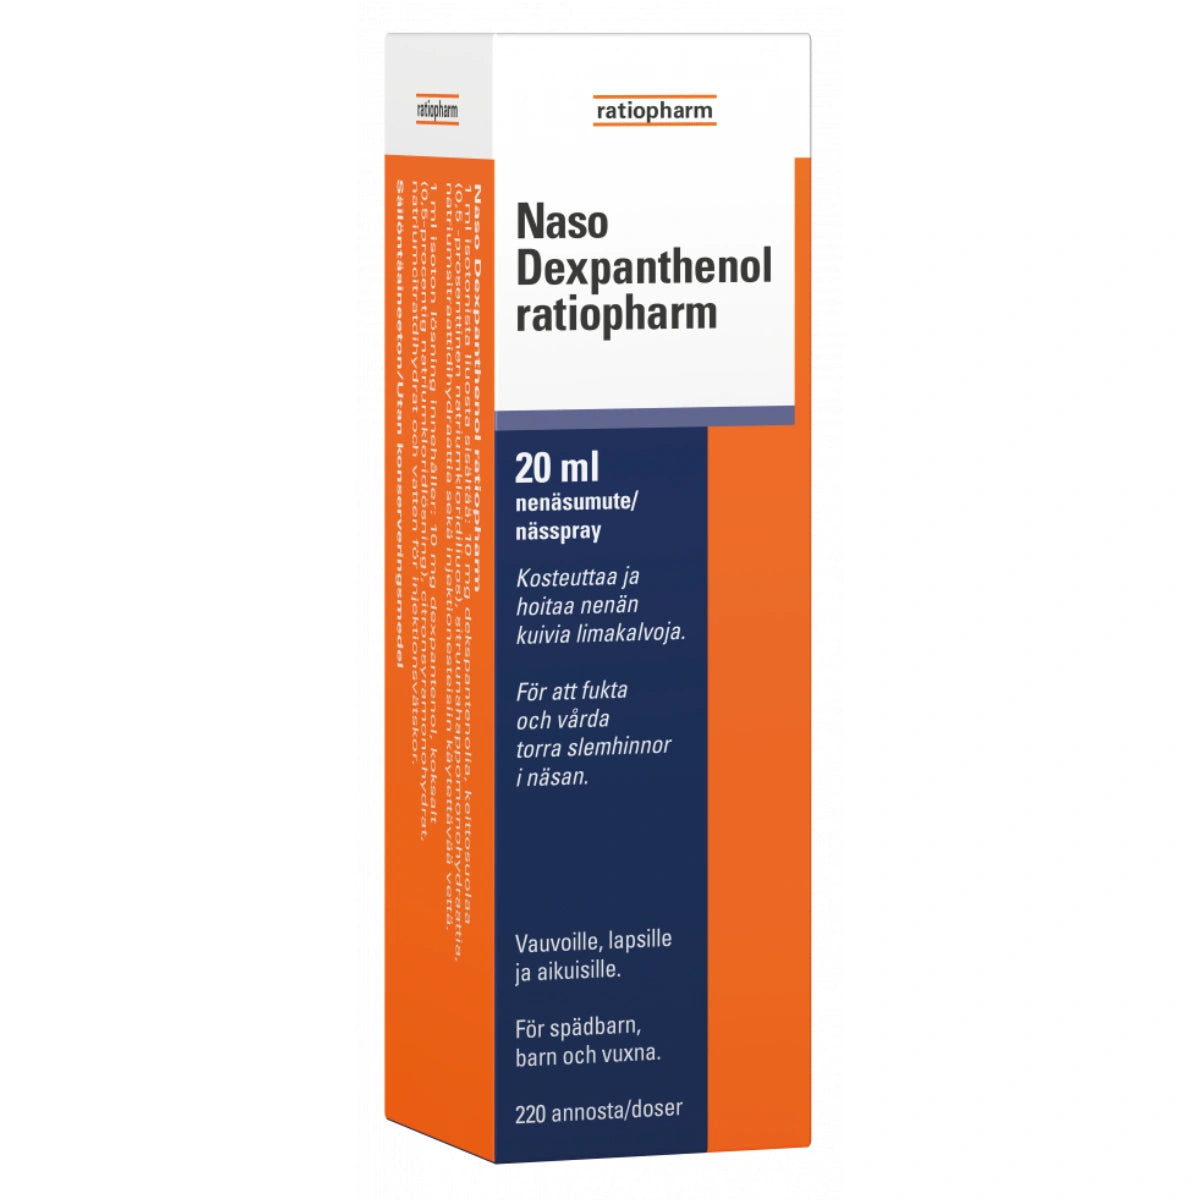 NASO Dexpanthenol Ratiopharm nenän kuivien limakalvojen hoitoon